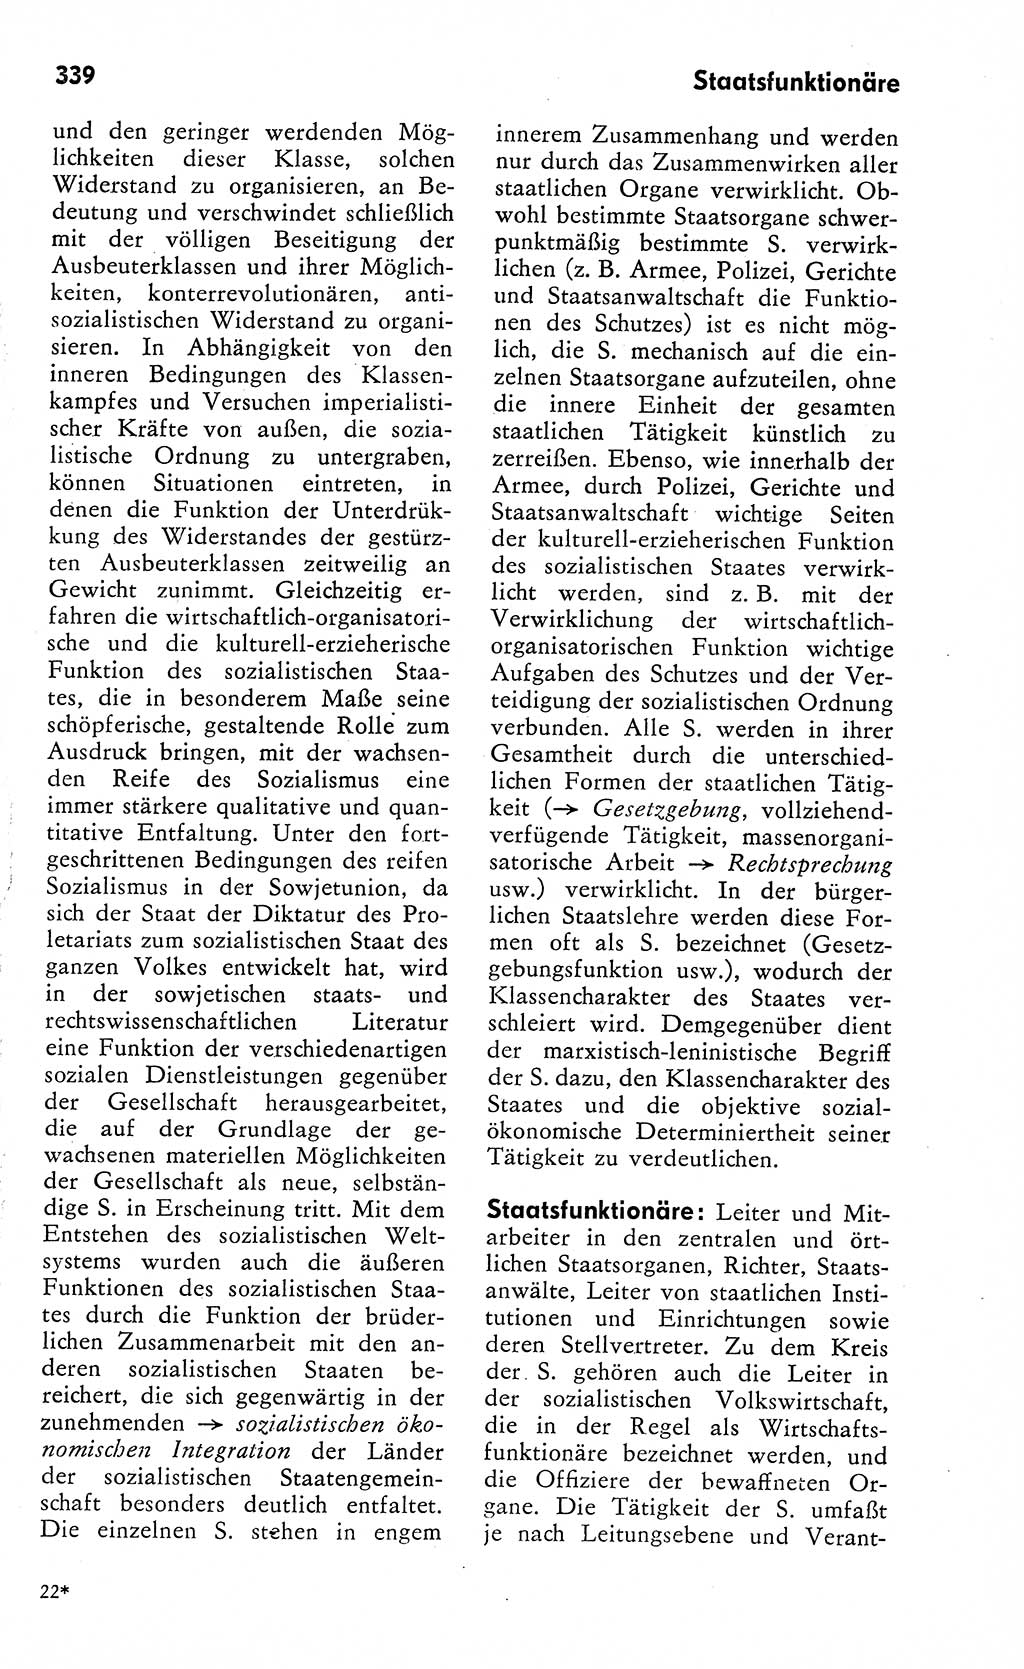 Wörterbuch zum sozialistischen Staat [Deutsche Demokratische Republik (DDR)] 1974, Seite 339 (Wb. soz. St. DDR 1974, S. 339)